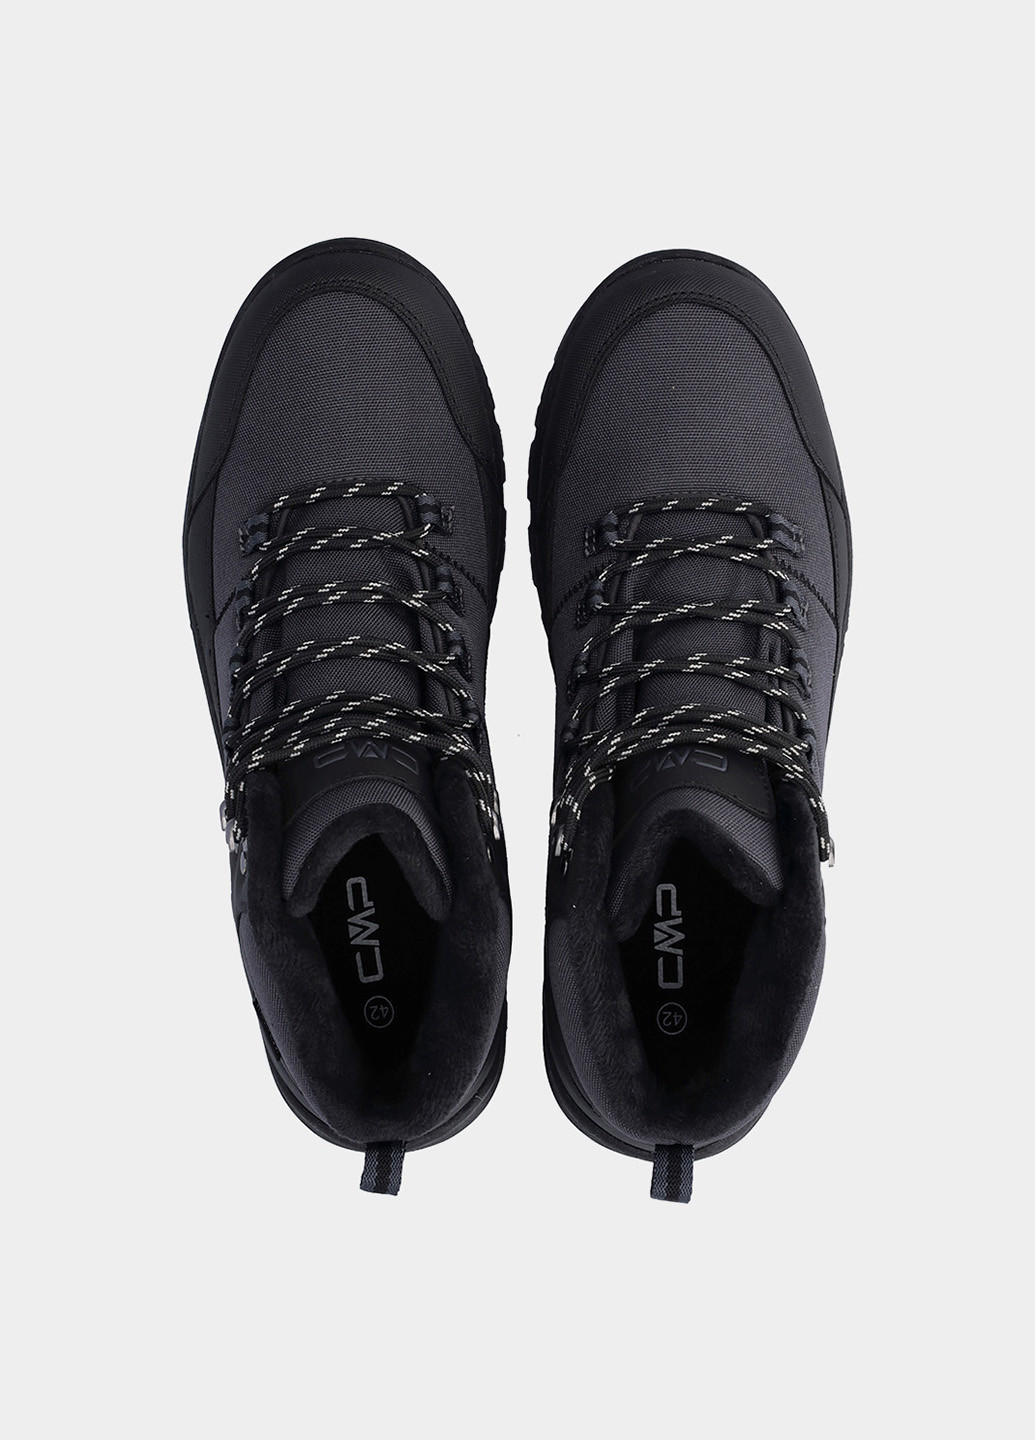 Темно-серые осенние ботинки CMP